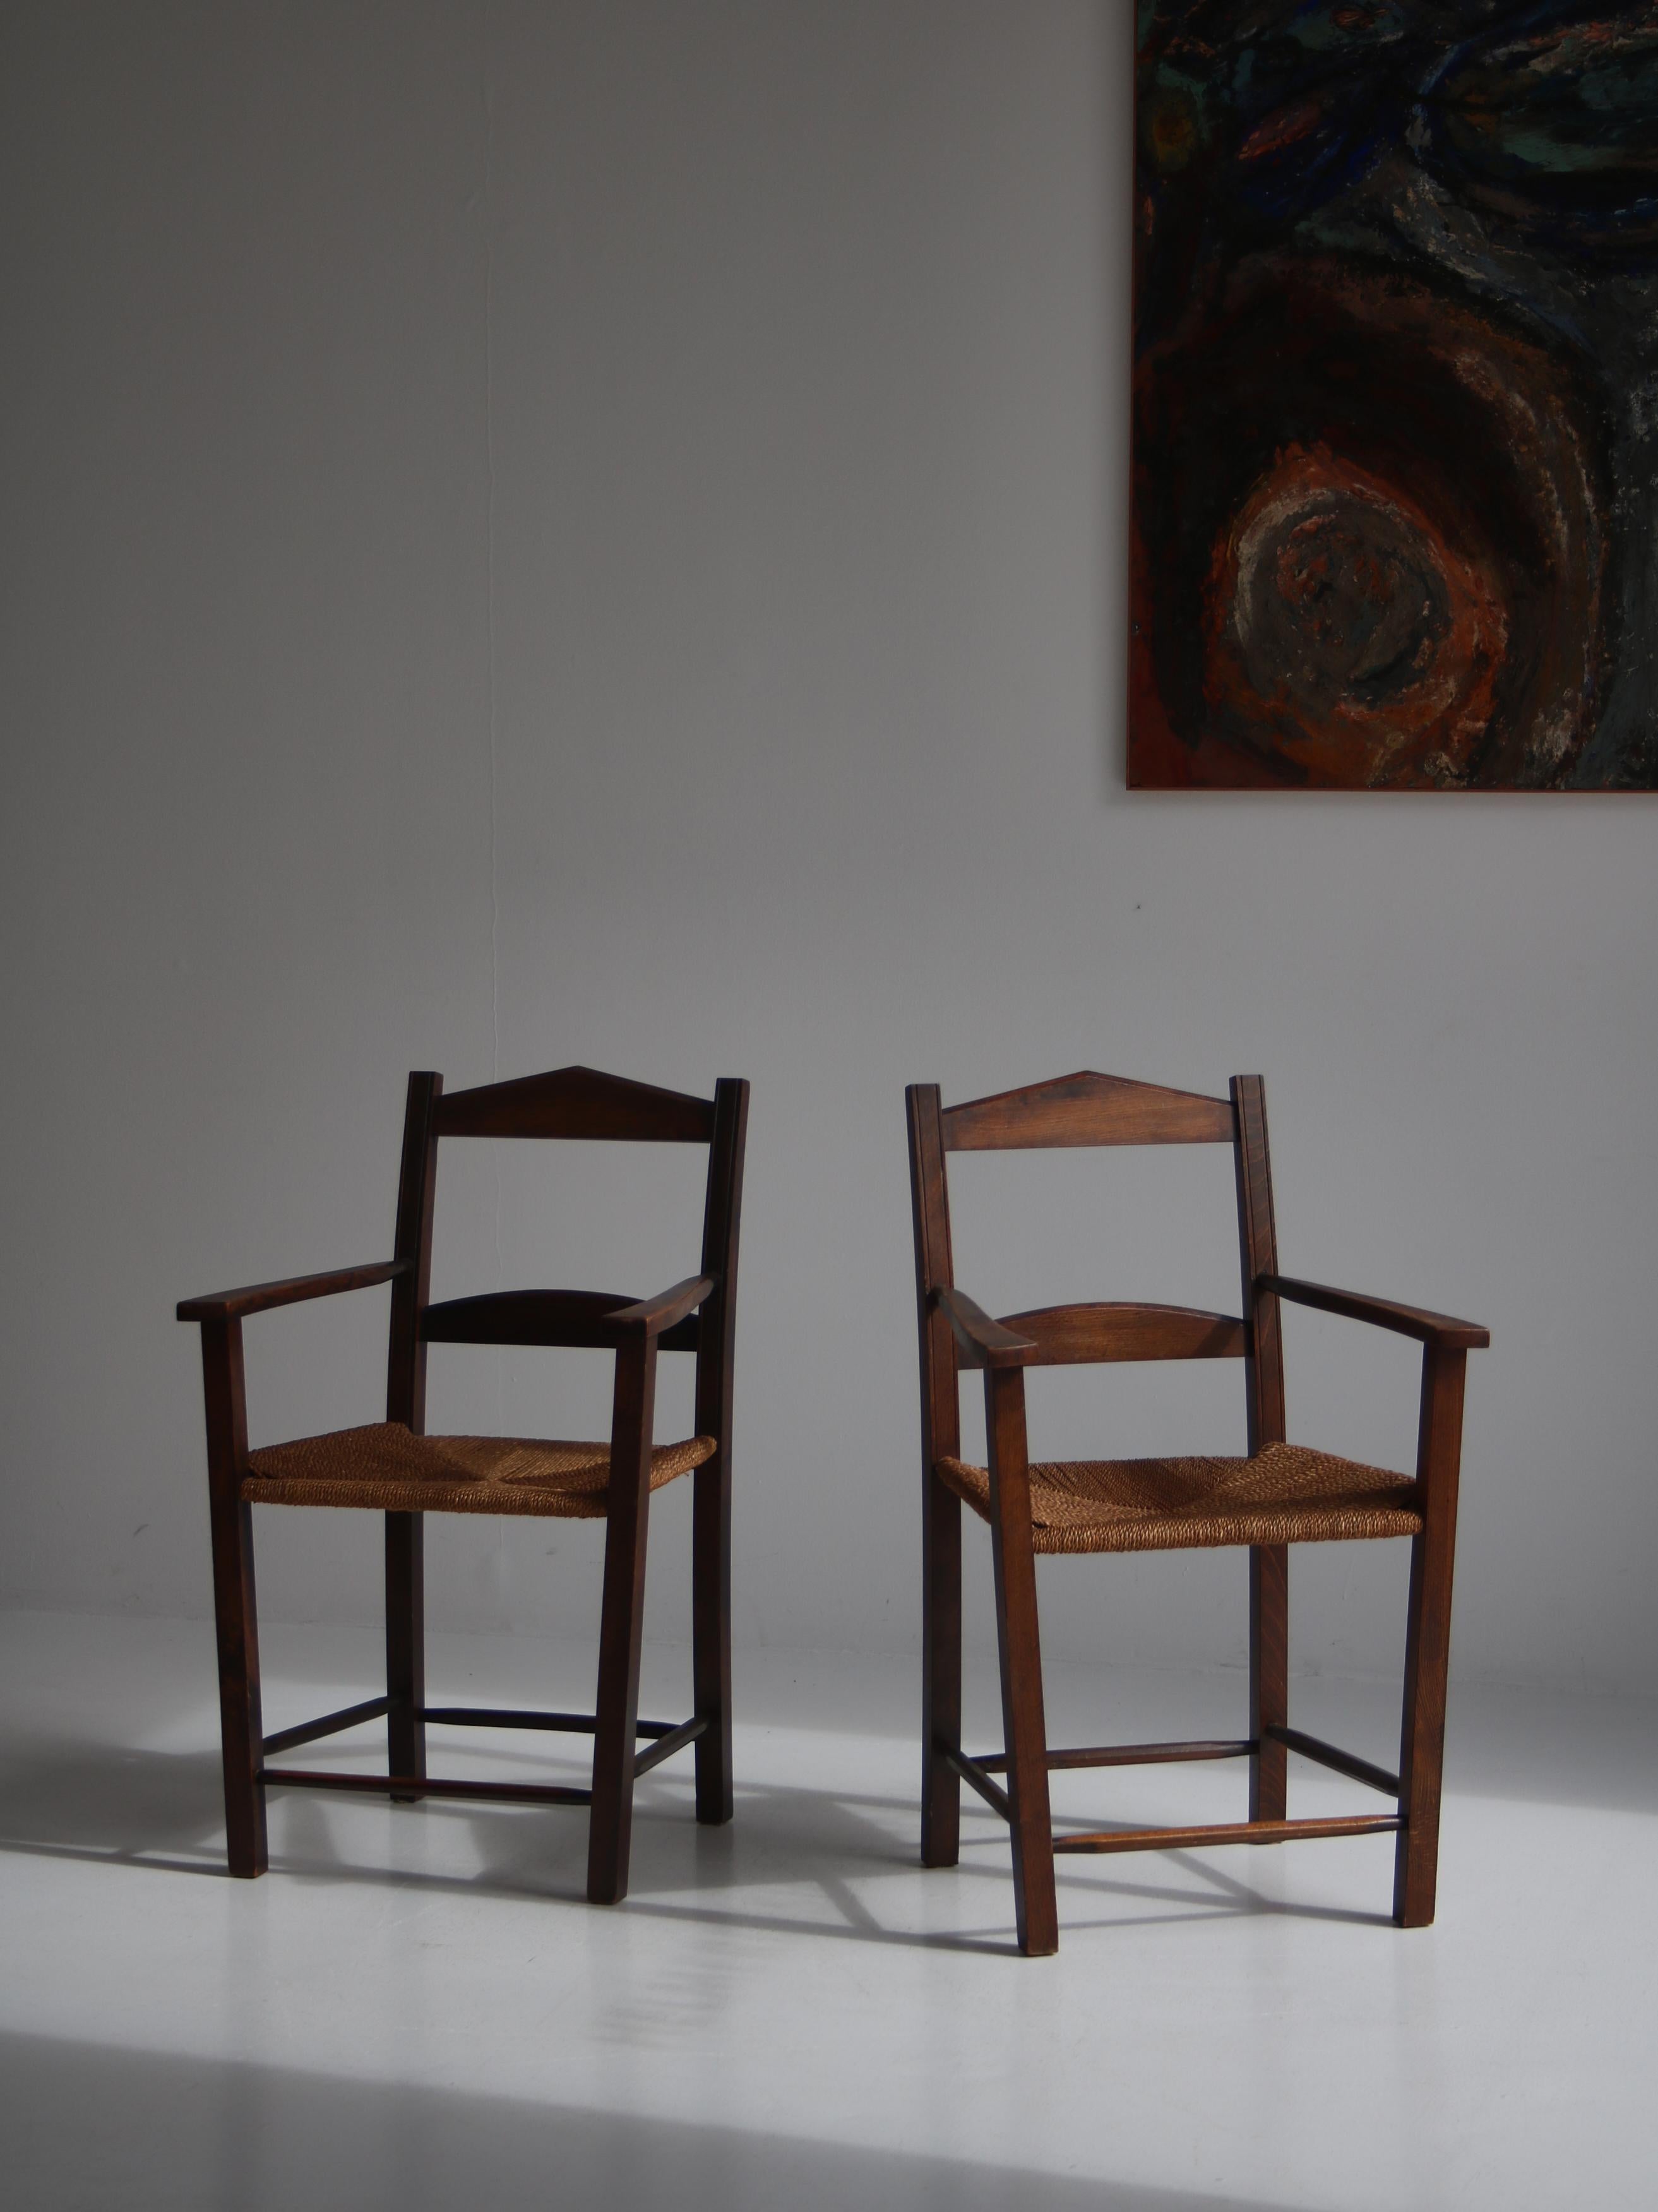 Charmantes Sesselpaar aus dunkel gebeiztem Kiefernholz mit Sitzflächen aus geflochtenem Seegras. Die Stühle wurden in den 1930-40er Jahren in Dänemark hergestellt und sind nie nachgearbeitet worden. Das Design ist schlicht und doch elegant, und die